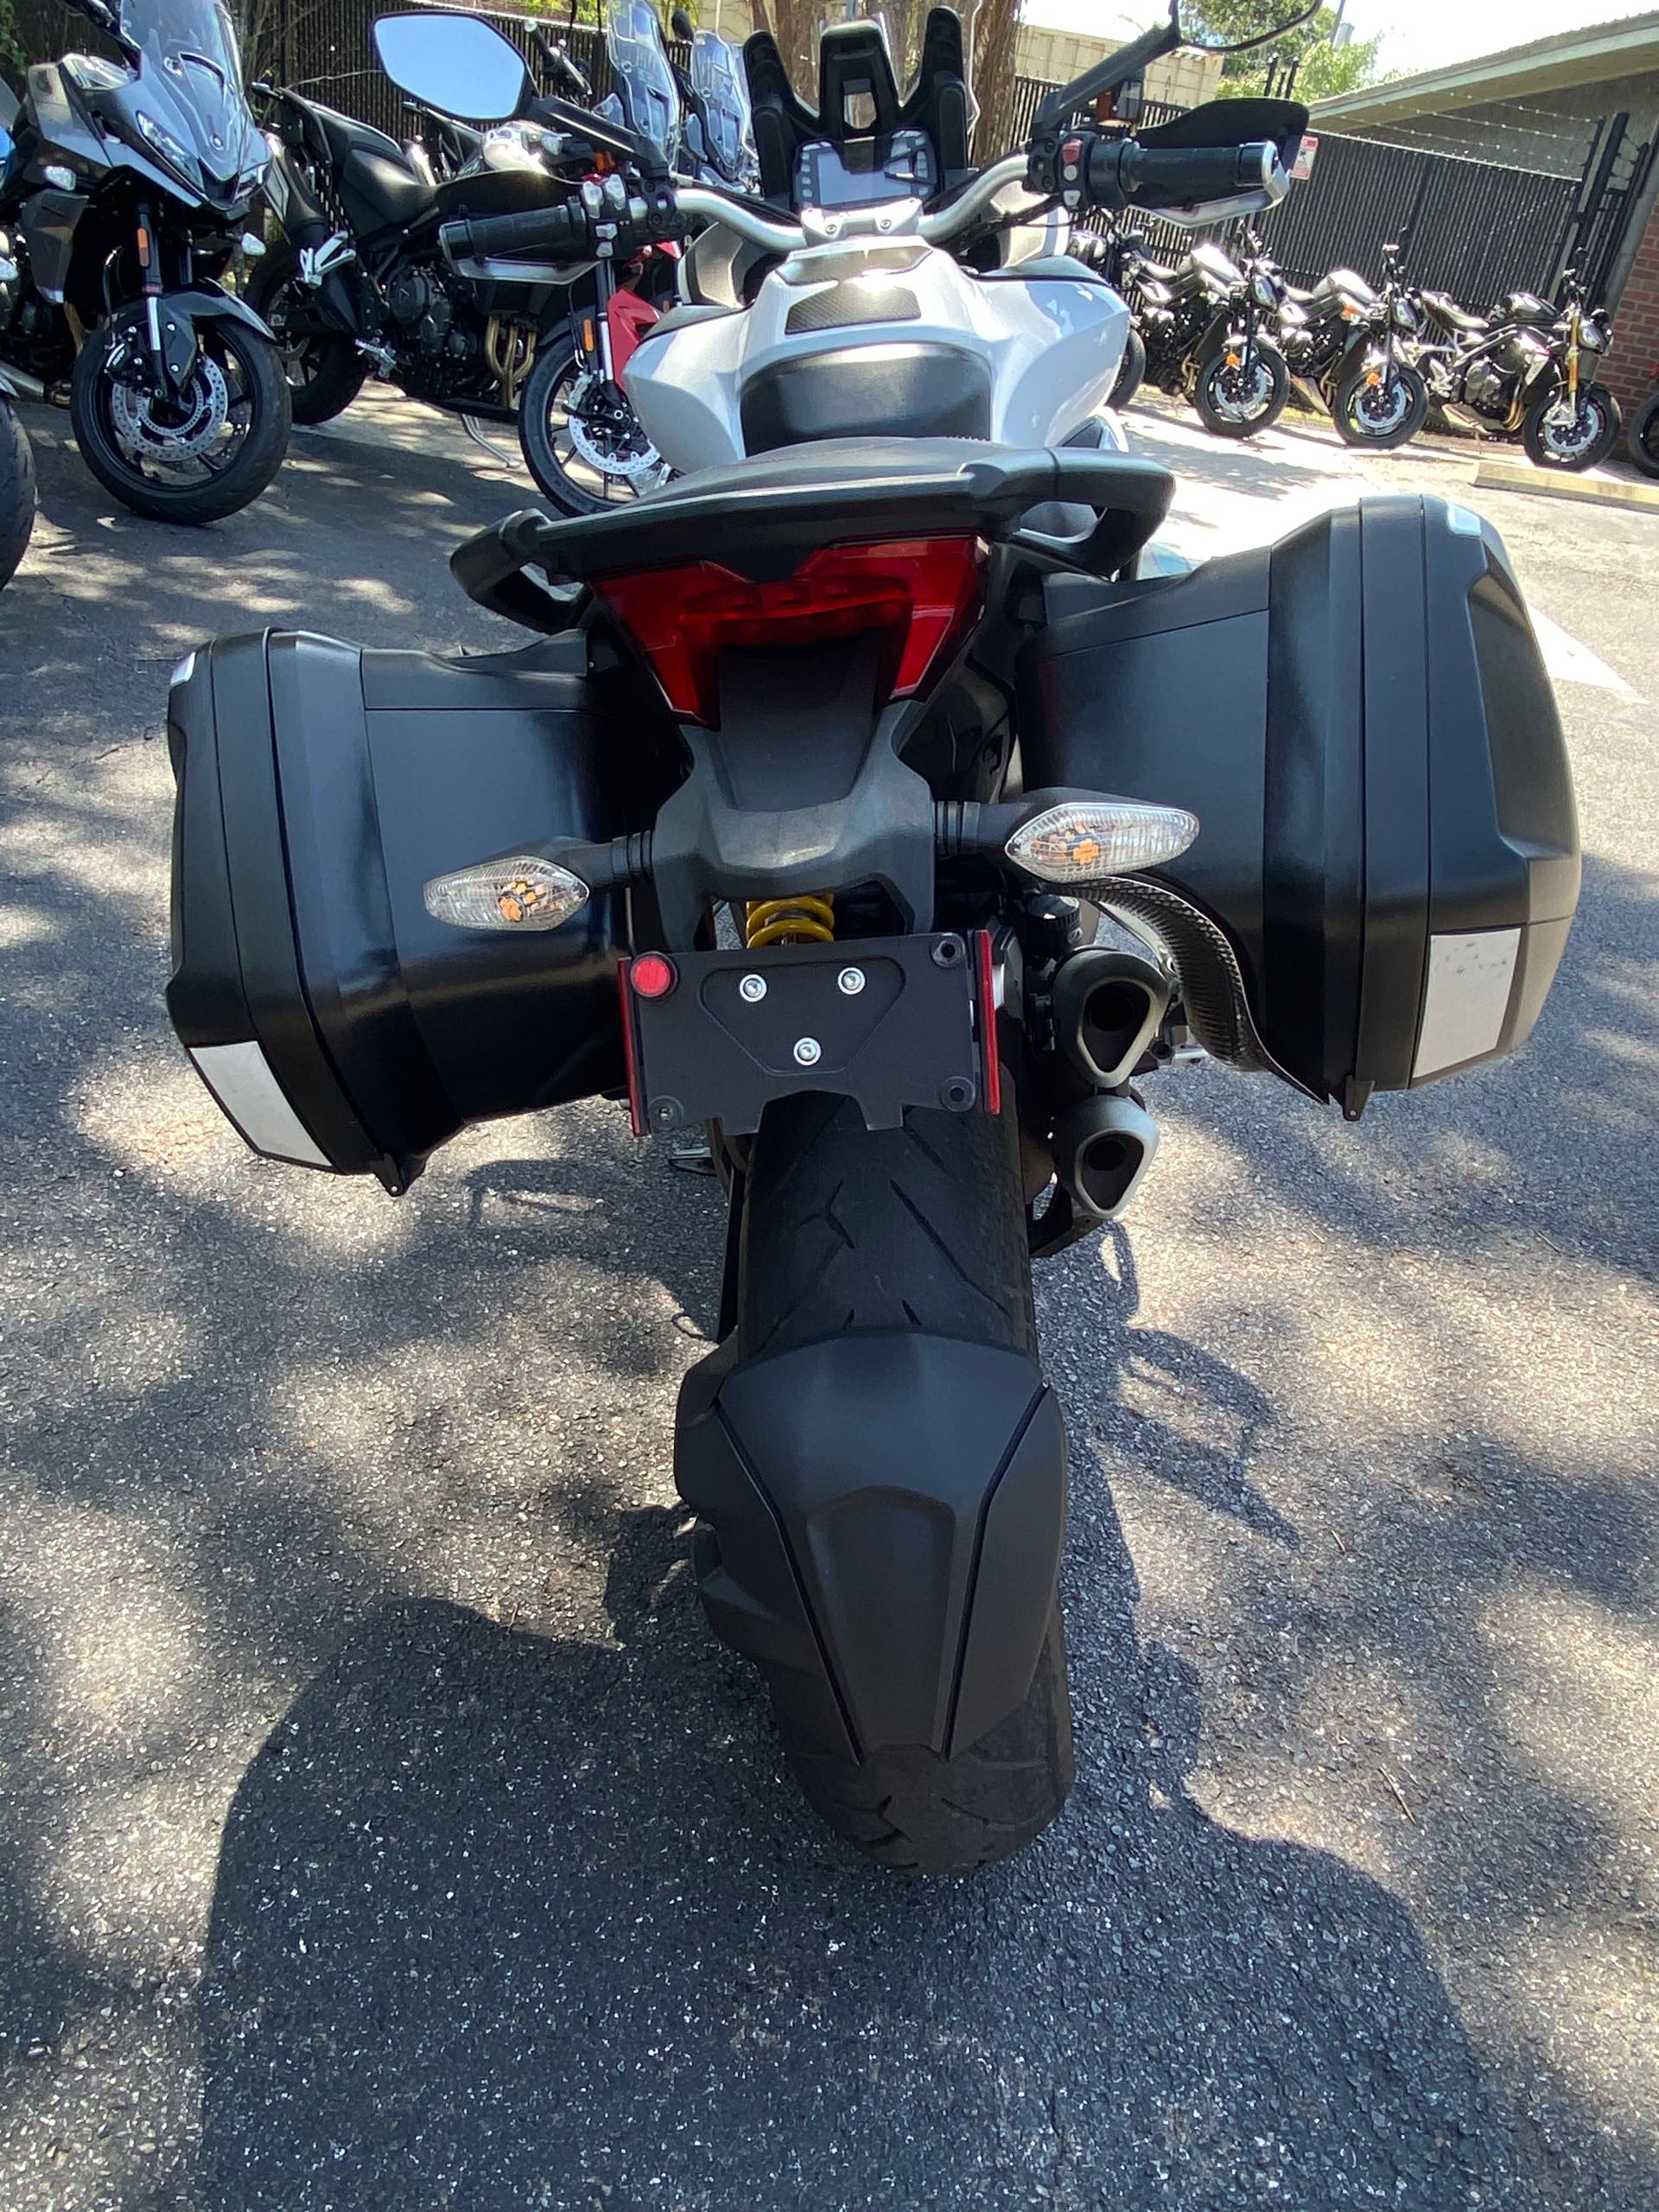 2015 Ducati Multistrada 1200 S at Tampa Triumph, Tampa, FL 33614